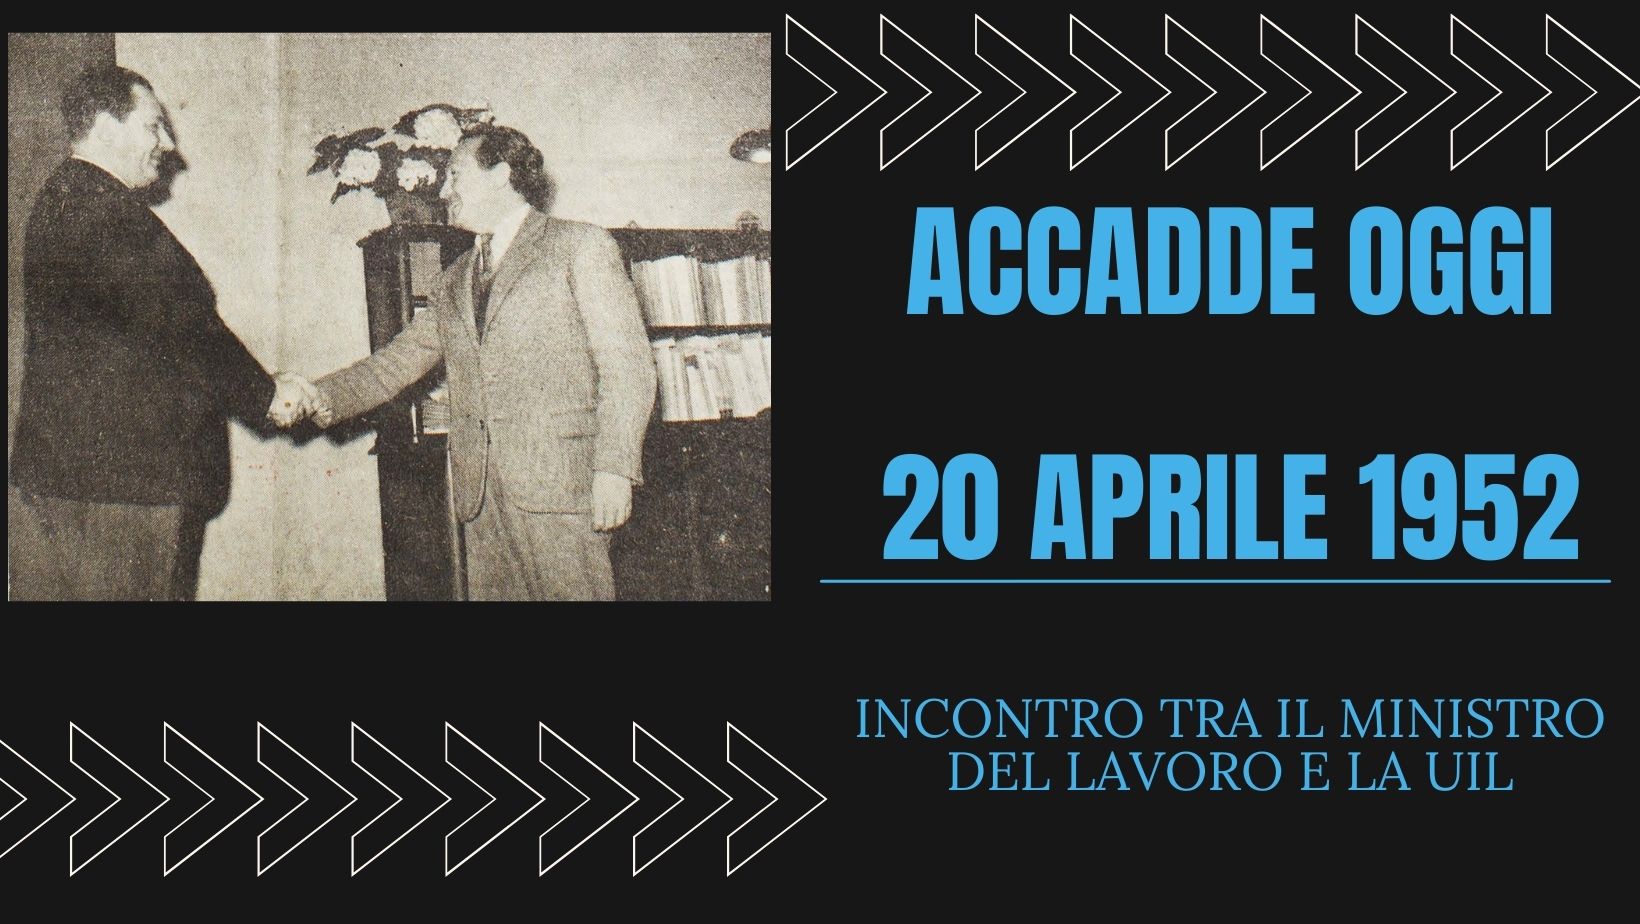 ACCADDE OGGI – 20 aprile 1952 Il Ministro Rubinacci incontra Viglianesi